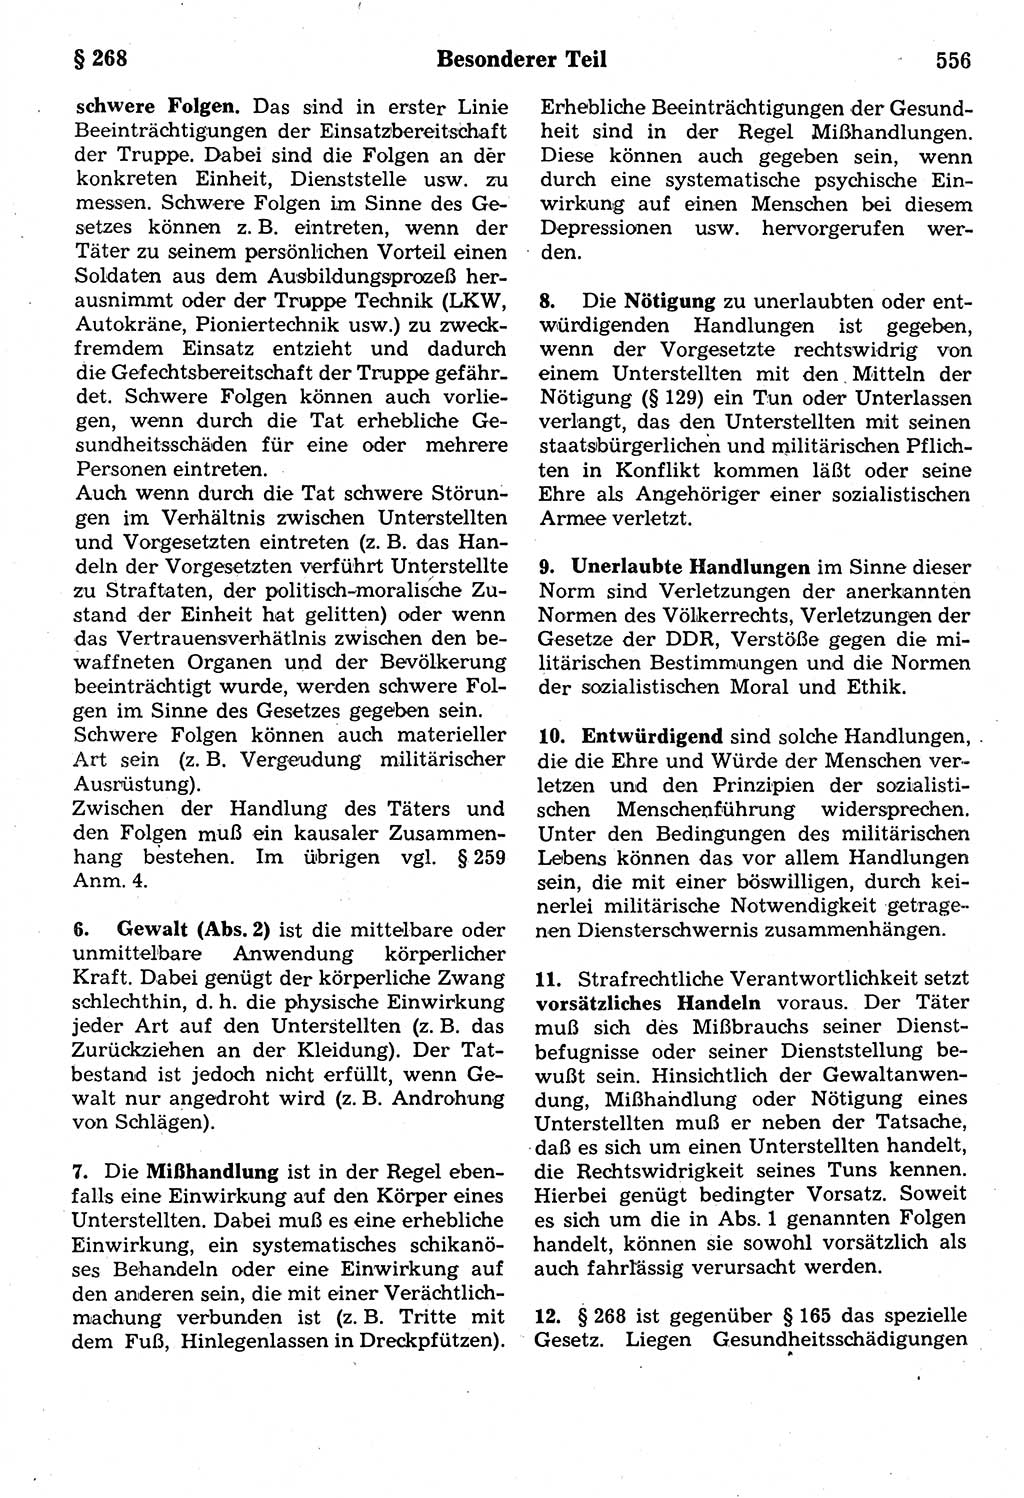 Strafrecht der Deutschen Demokratischen Republik (DDR), Kommentar zum Strafgesetzbuch (StGB) 1987, Seite 556 (Strafr. DDR Komm. StGB 1987, S. 556)